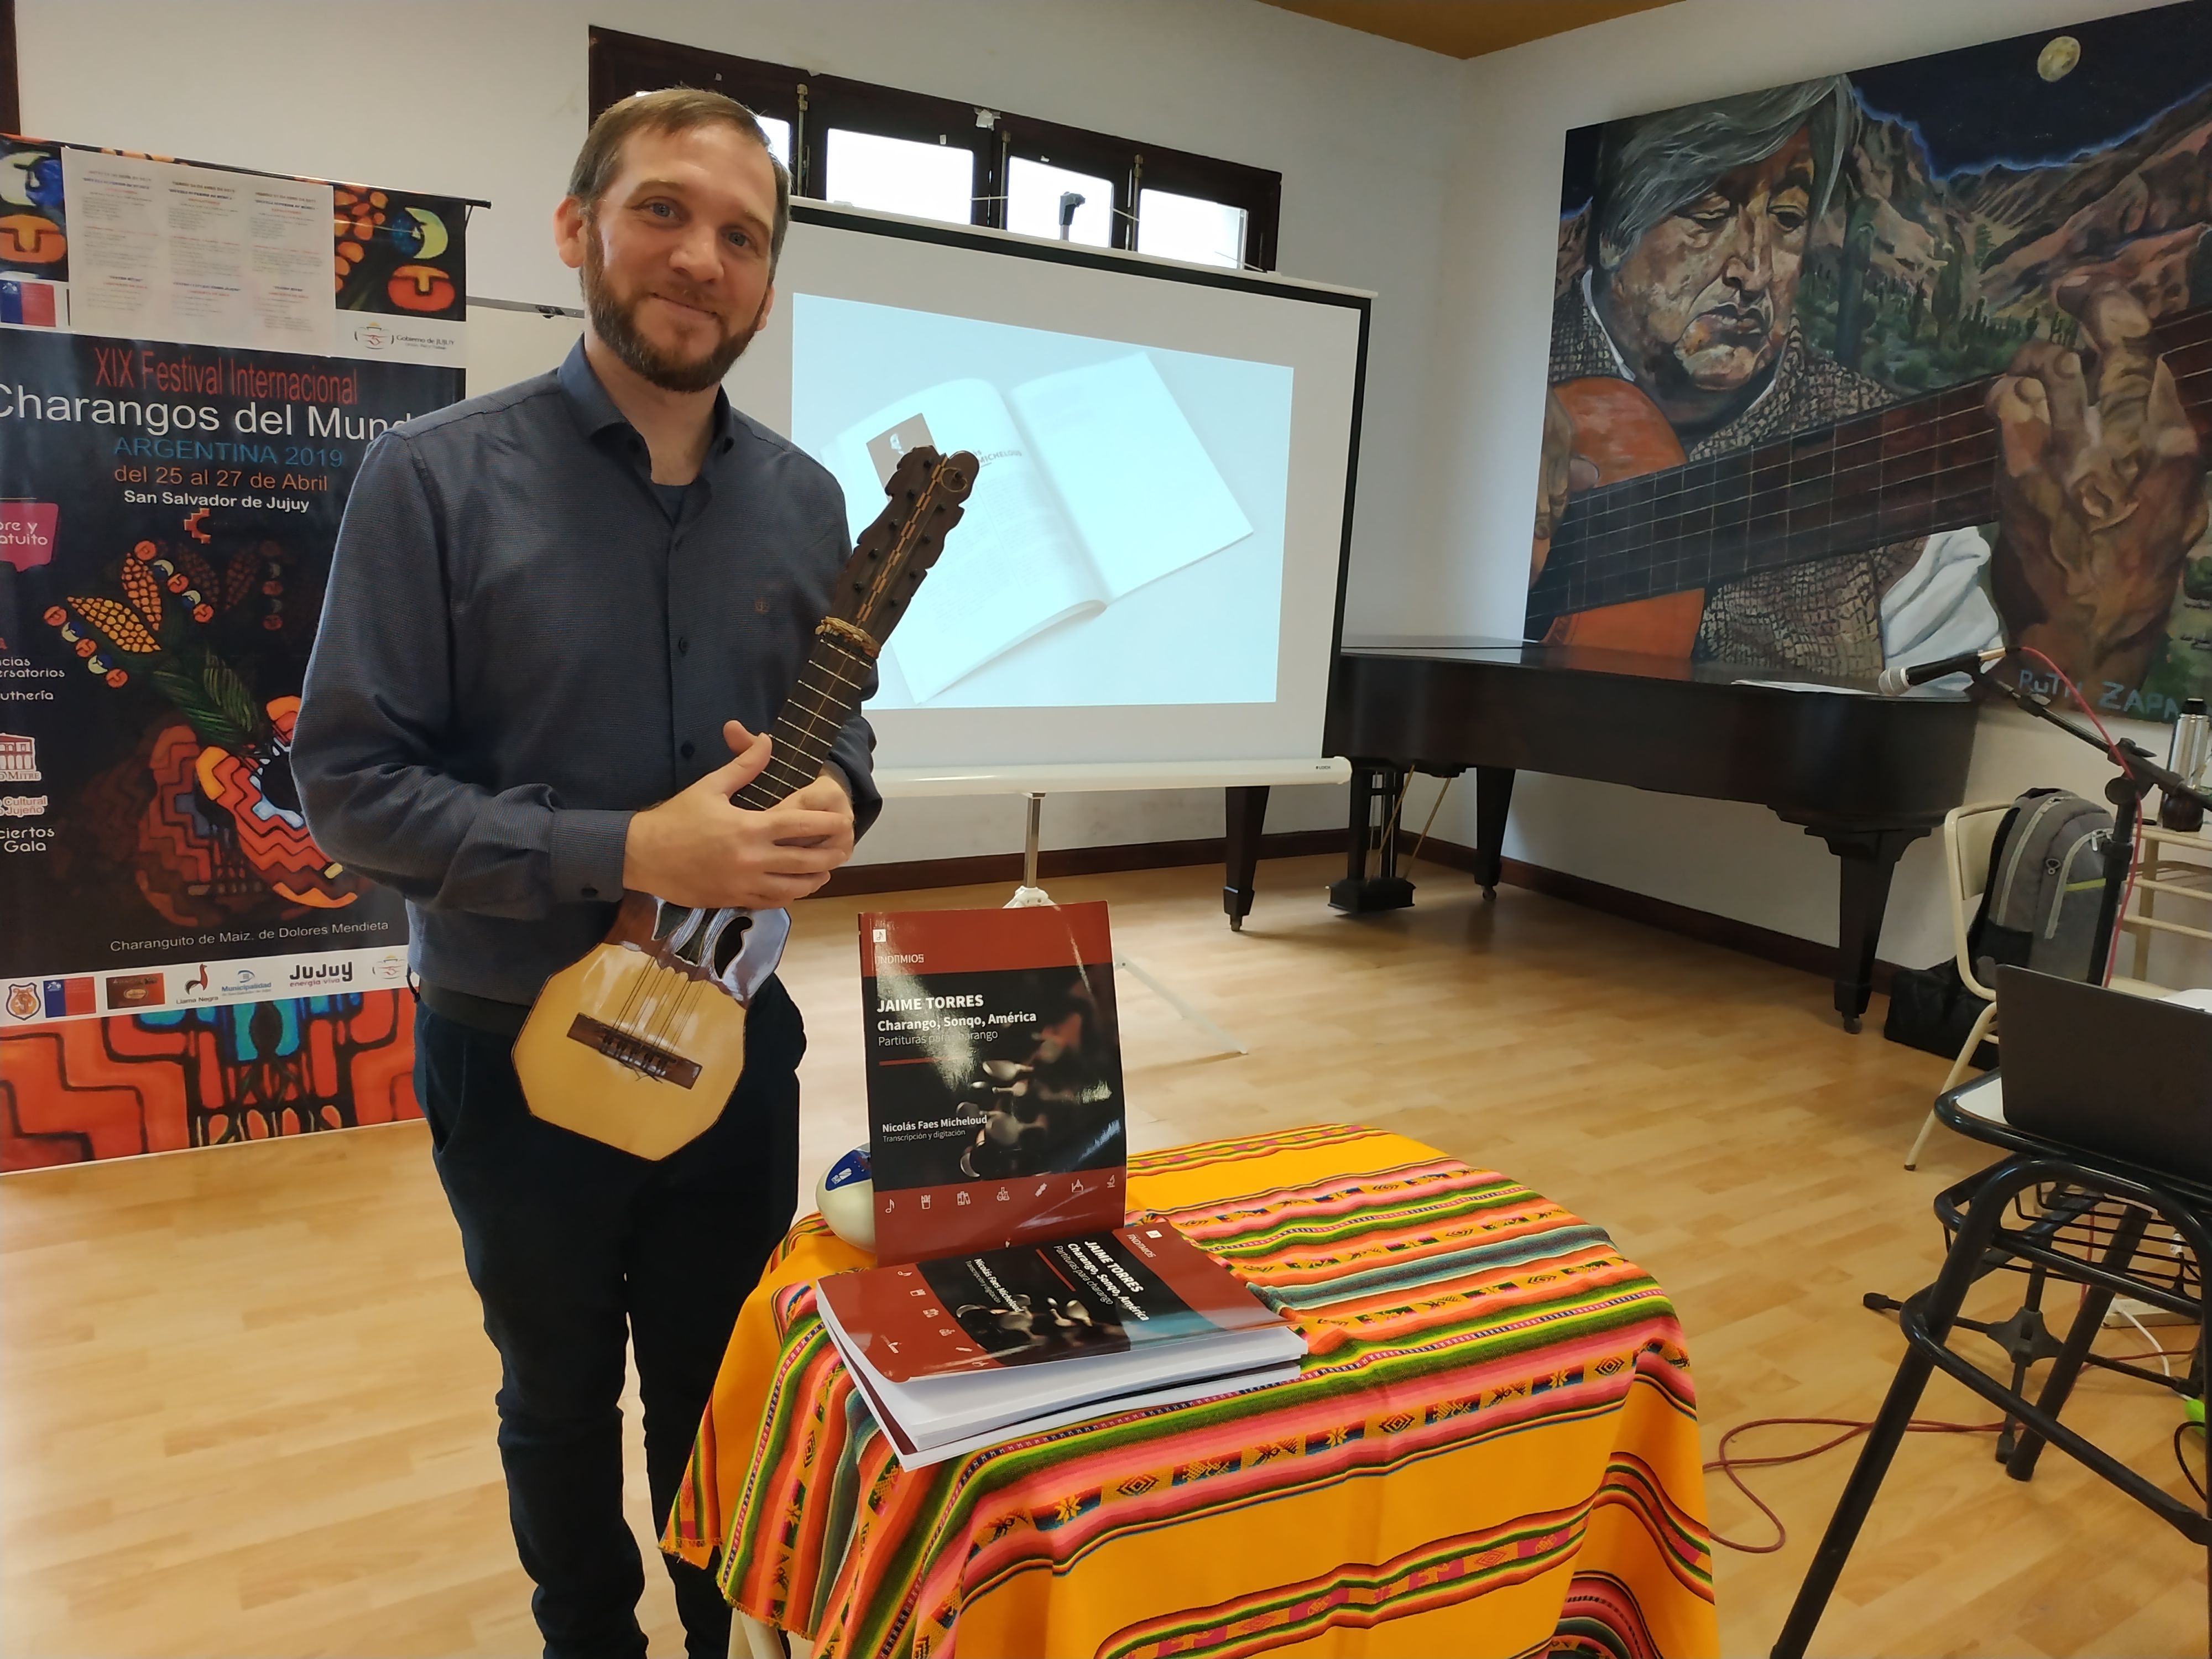 Nicolás Faes Micheloud presento en la Escuela Superior de Música la recopilación de 15 obras de Jaime Torre